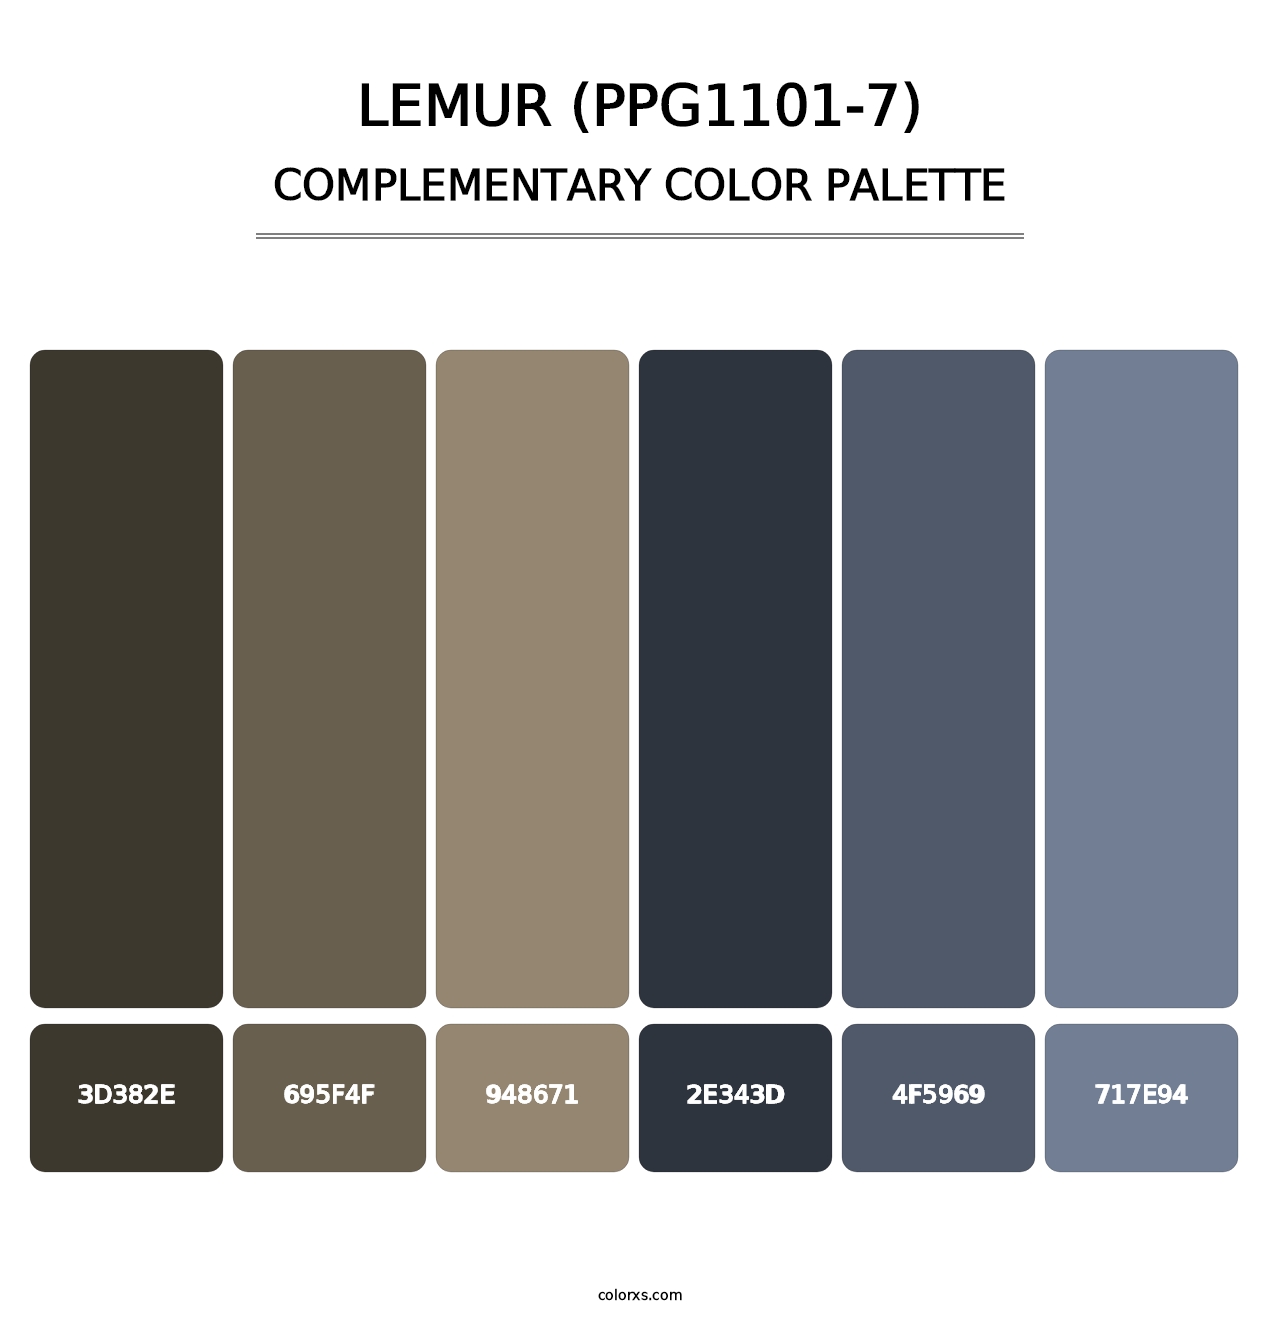 Lemur (PPG1101-7) - Complementary Color Palette